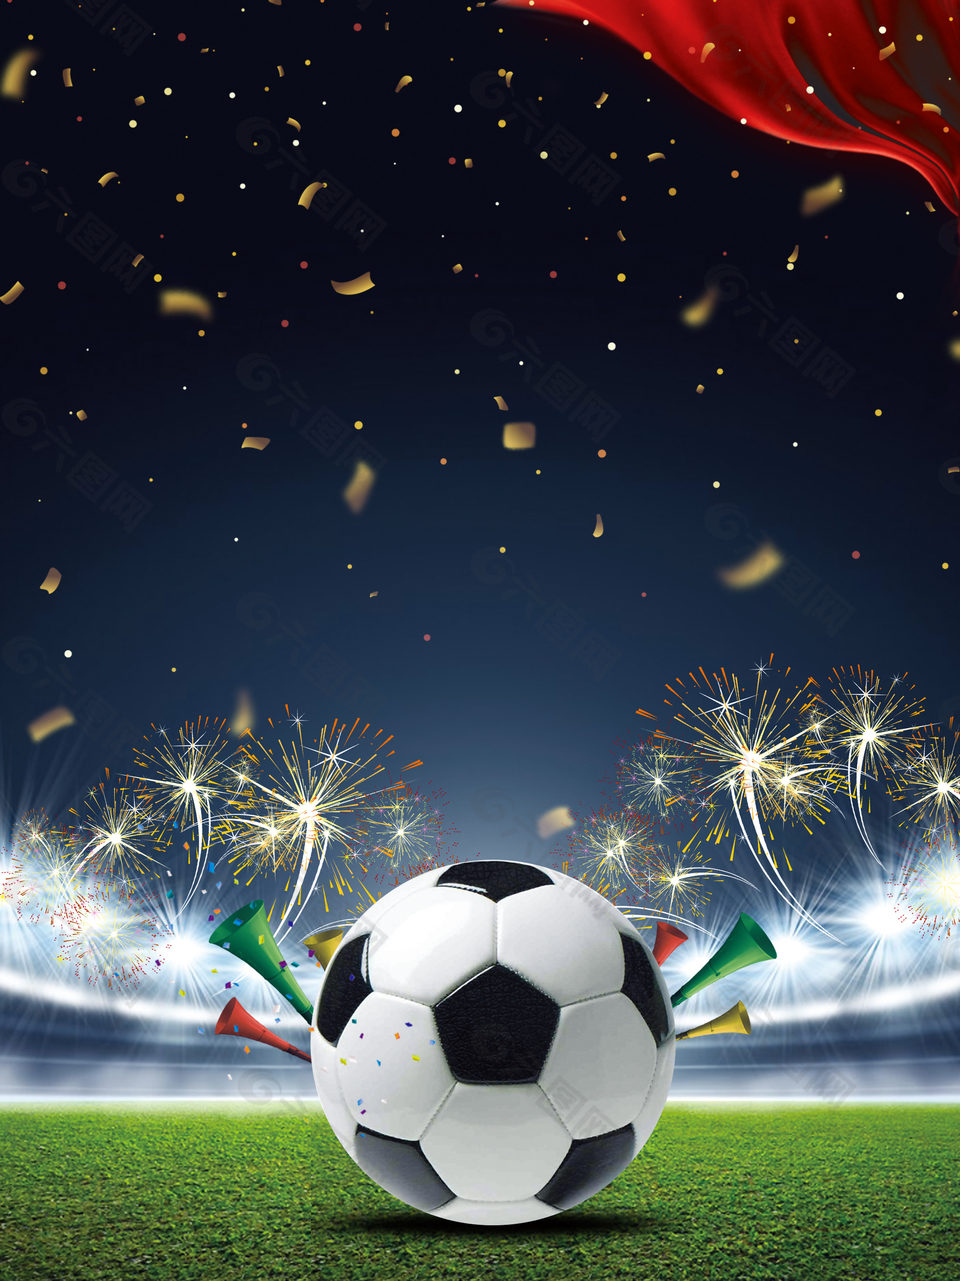 世界足球日体育运动海报背景